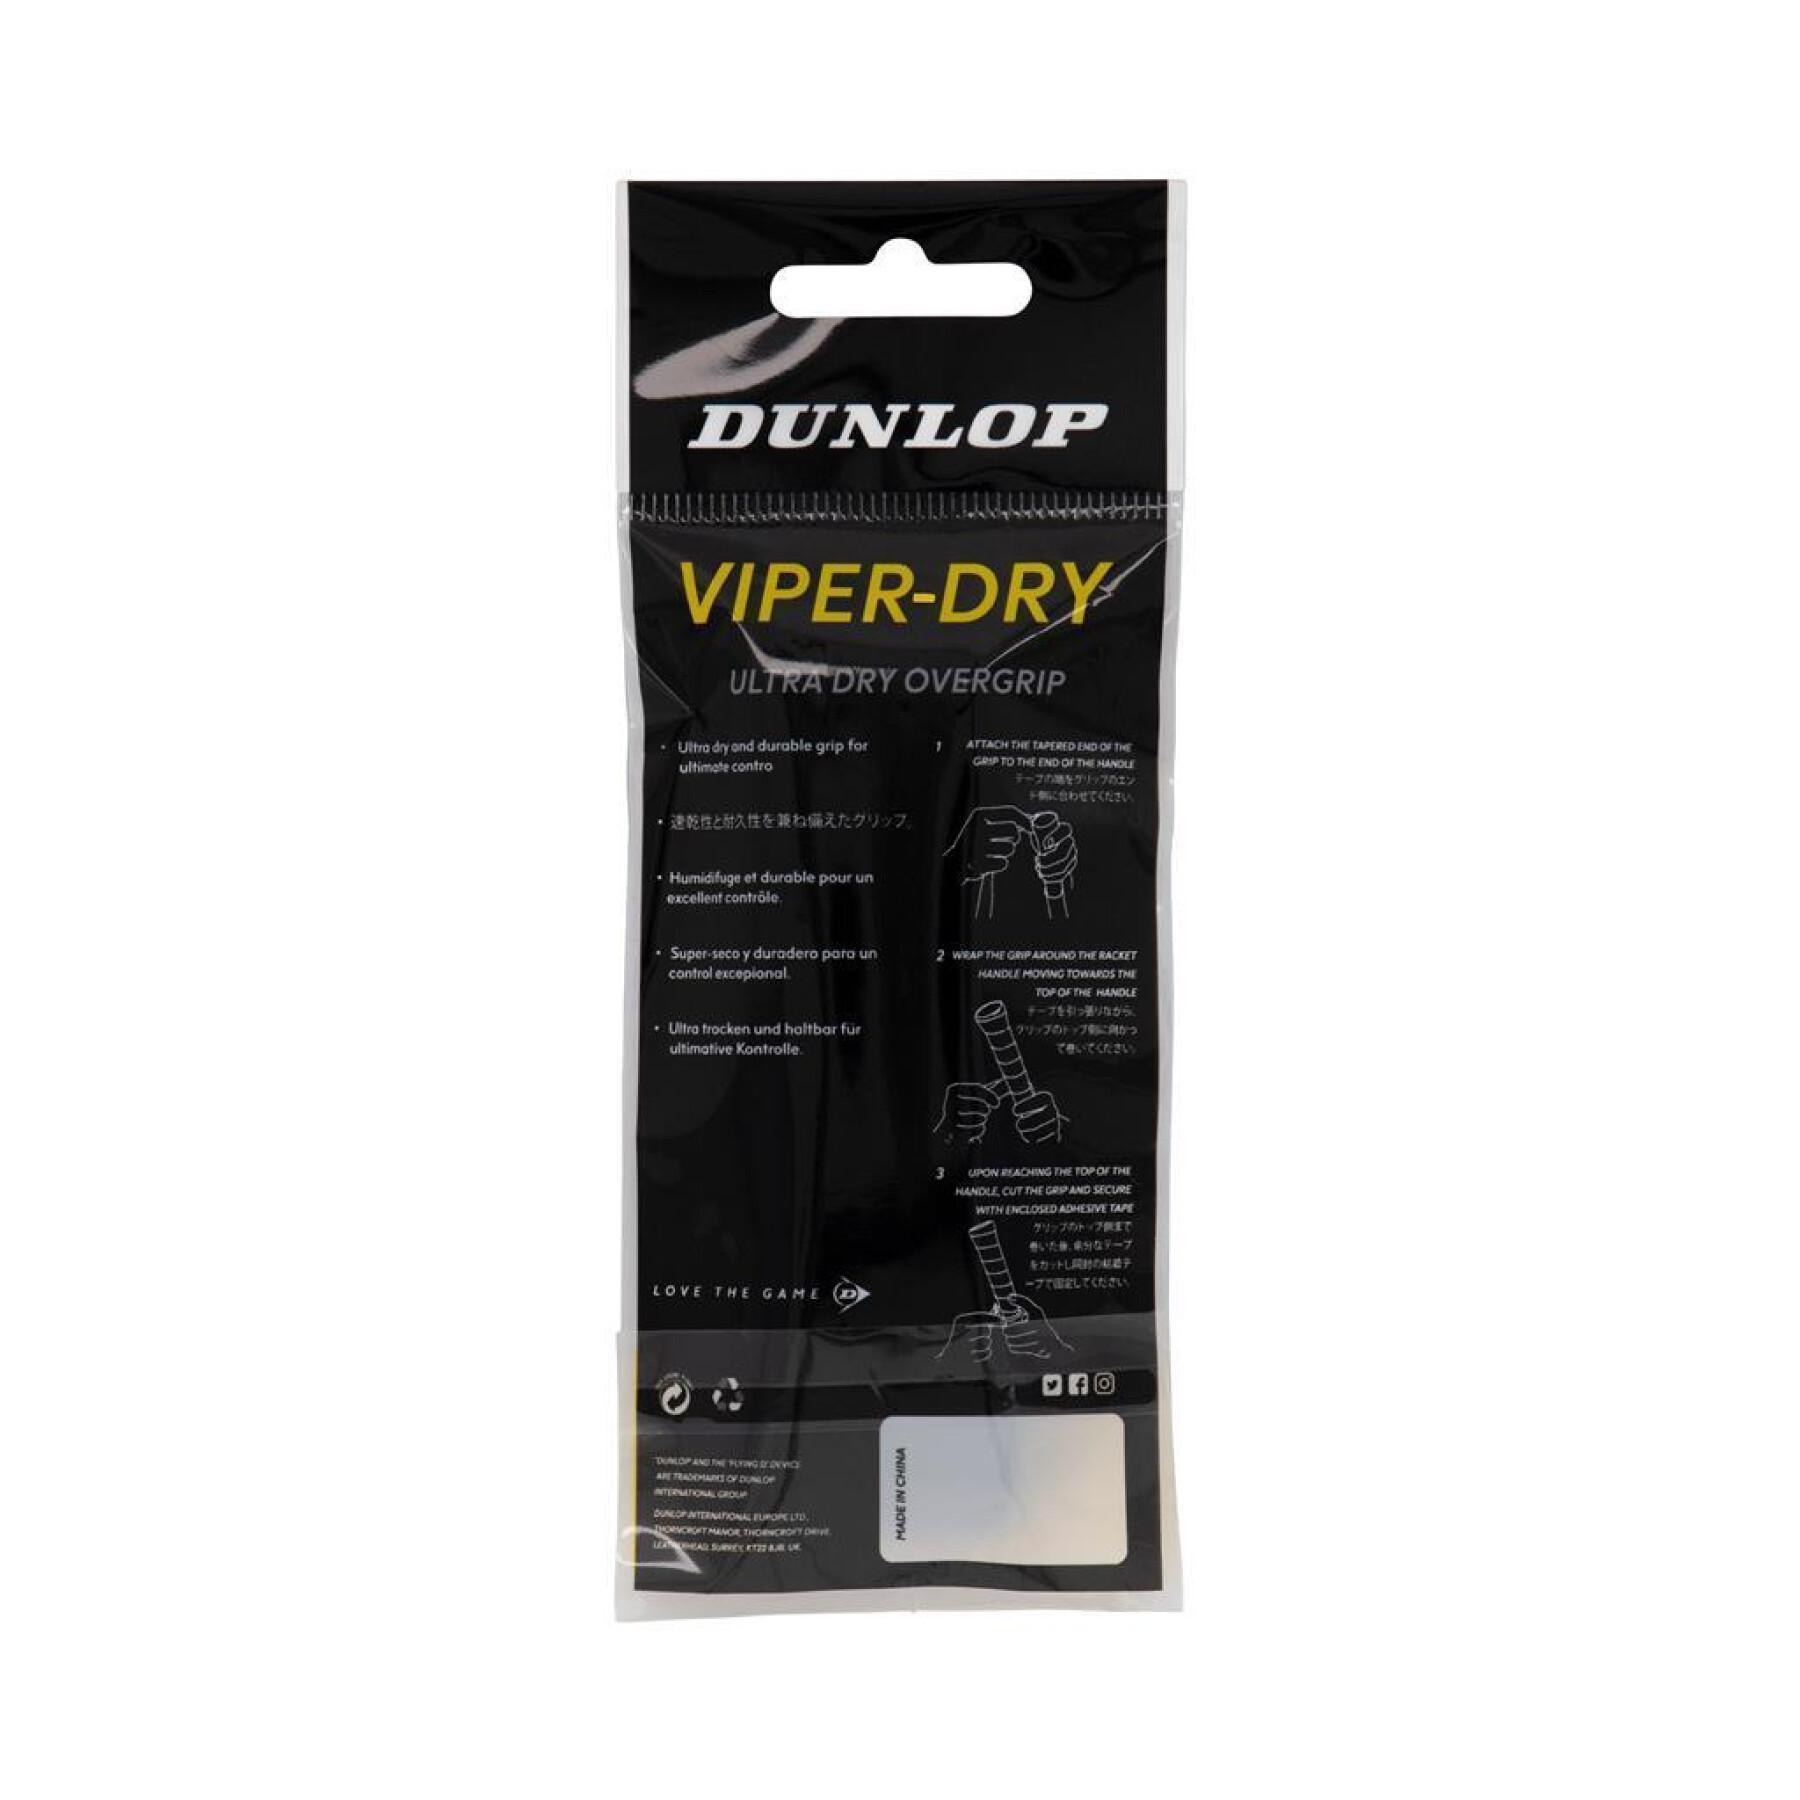 Lot de 50 GripS de tennis Dunlop Viperdry